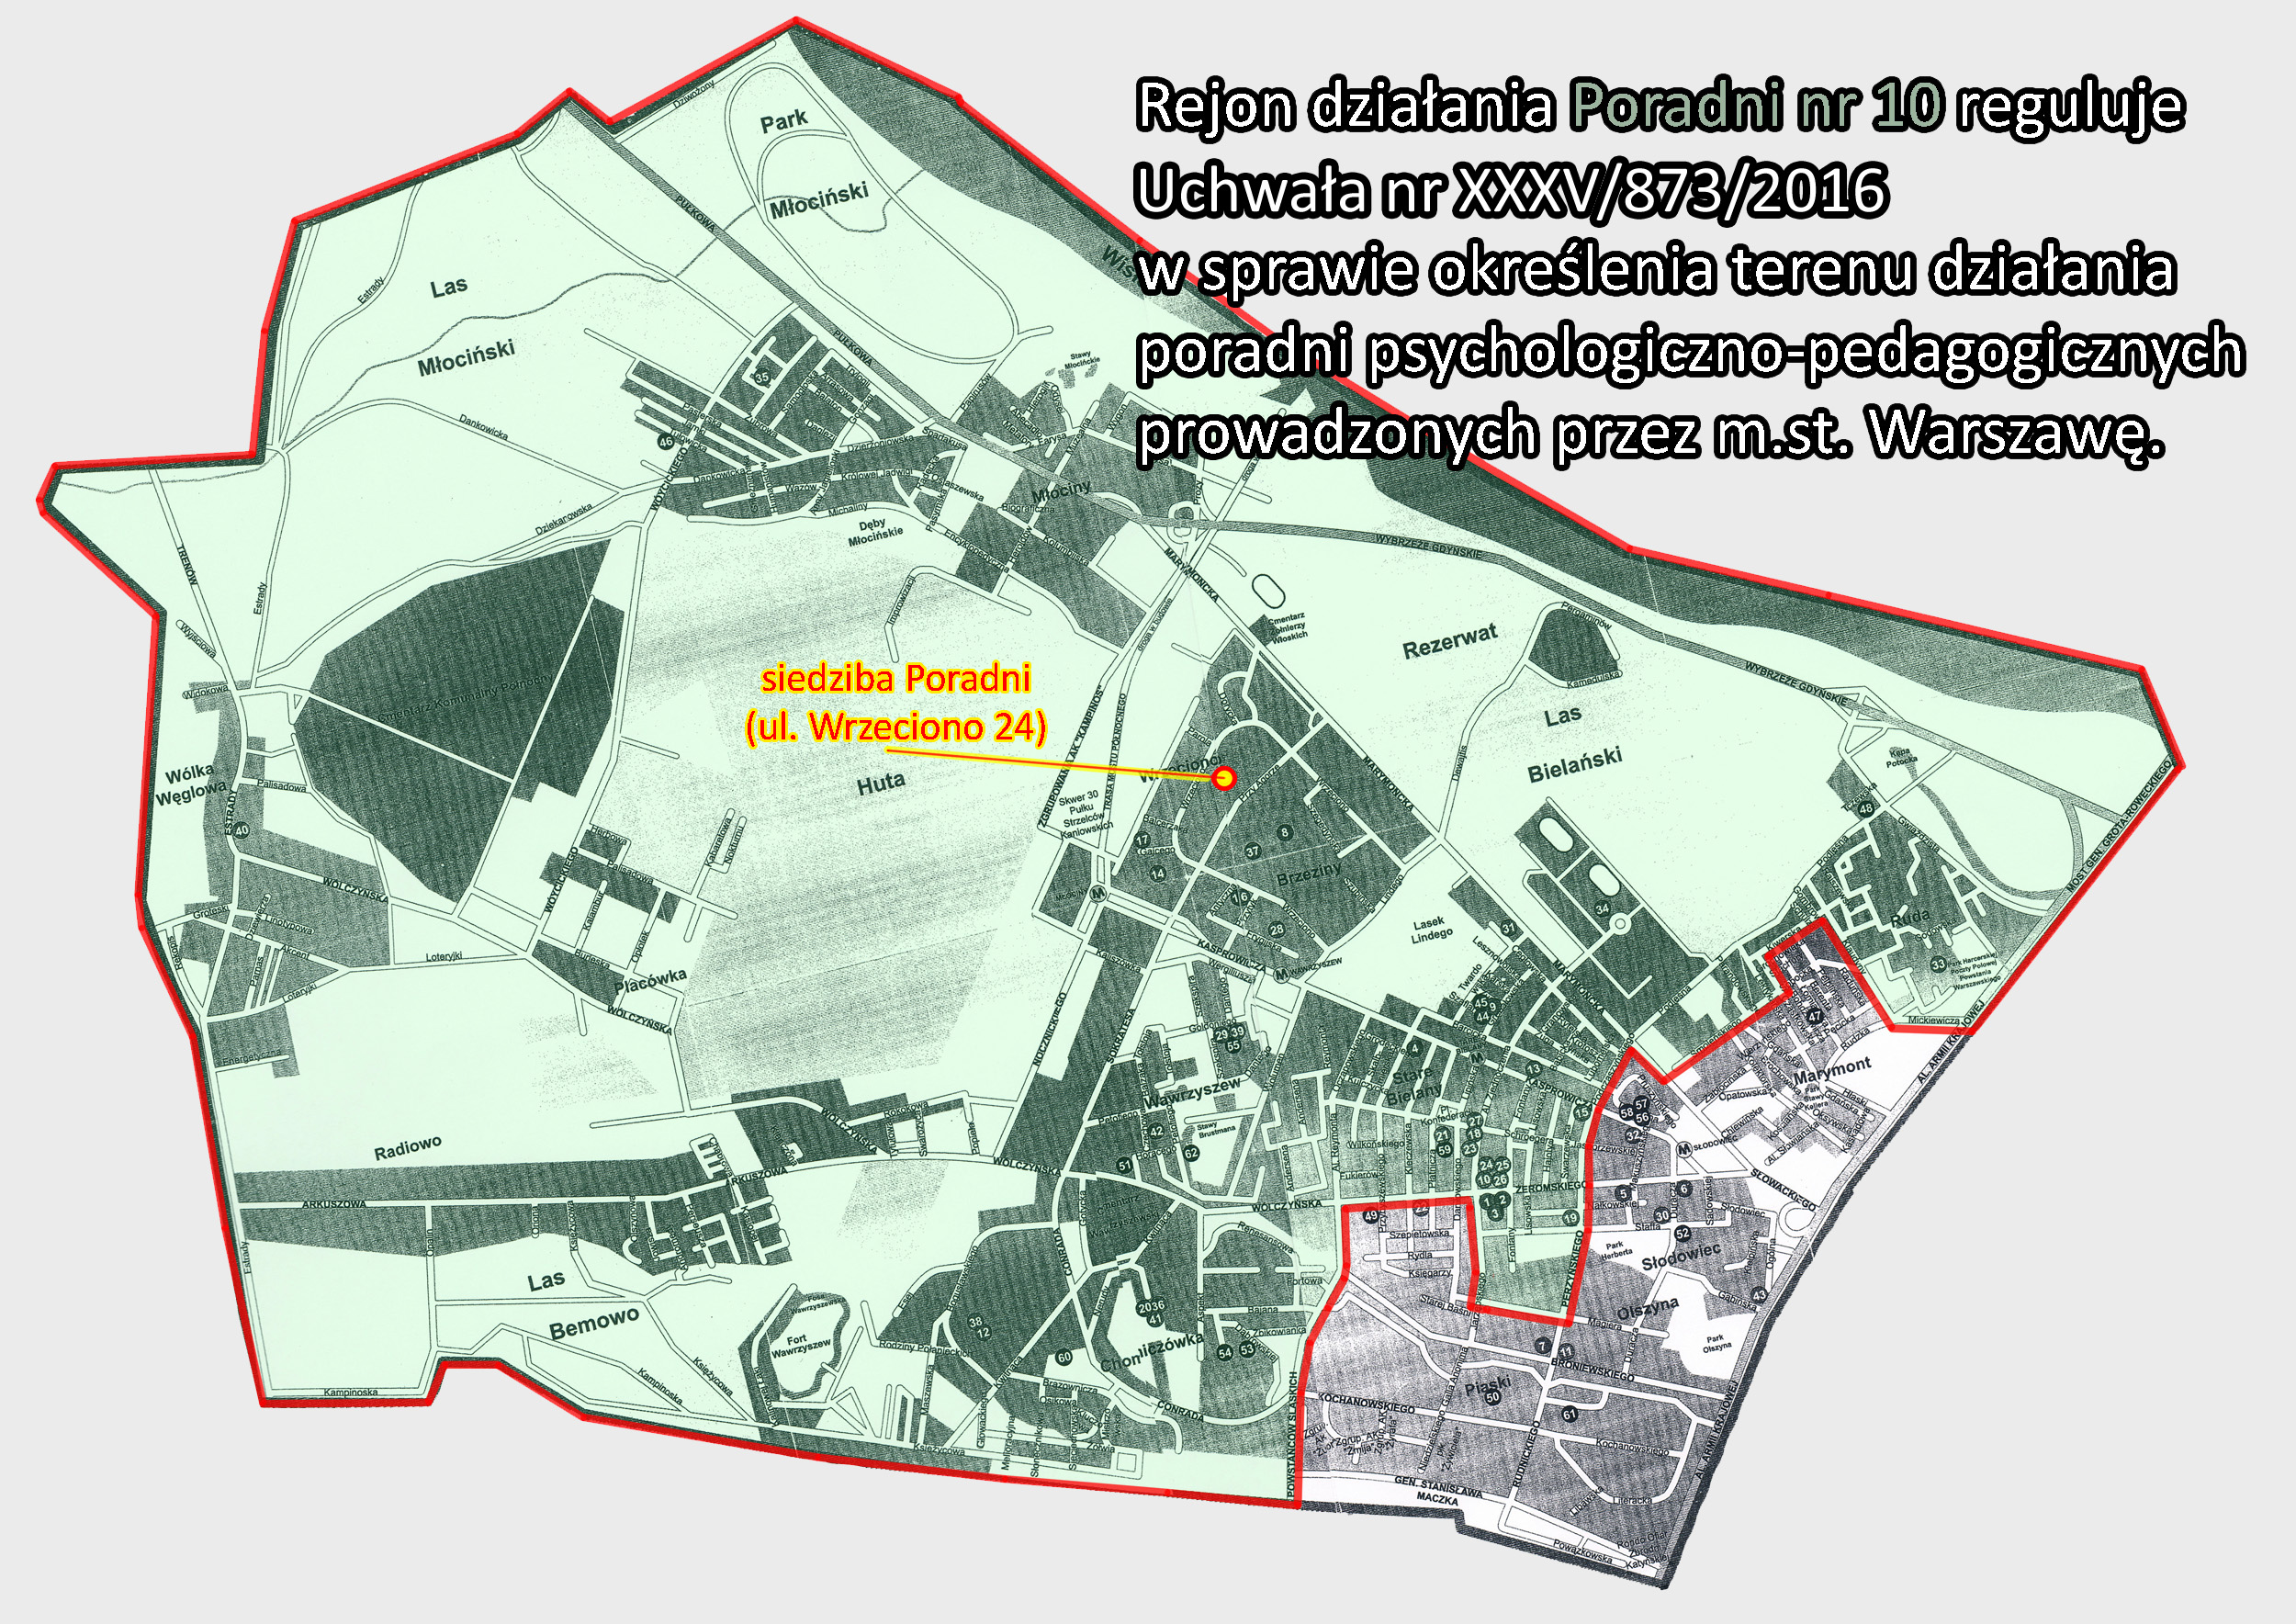 plan dzielnicy Bielany z zaznaczonym rejonem działania Poradni nr 10